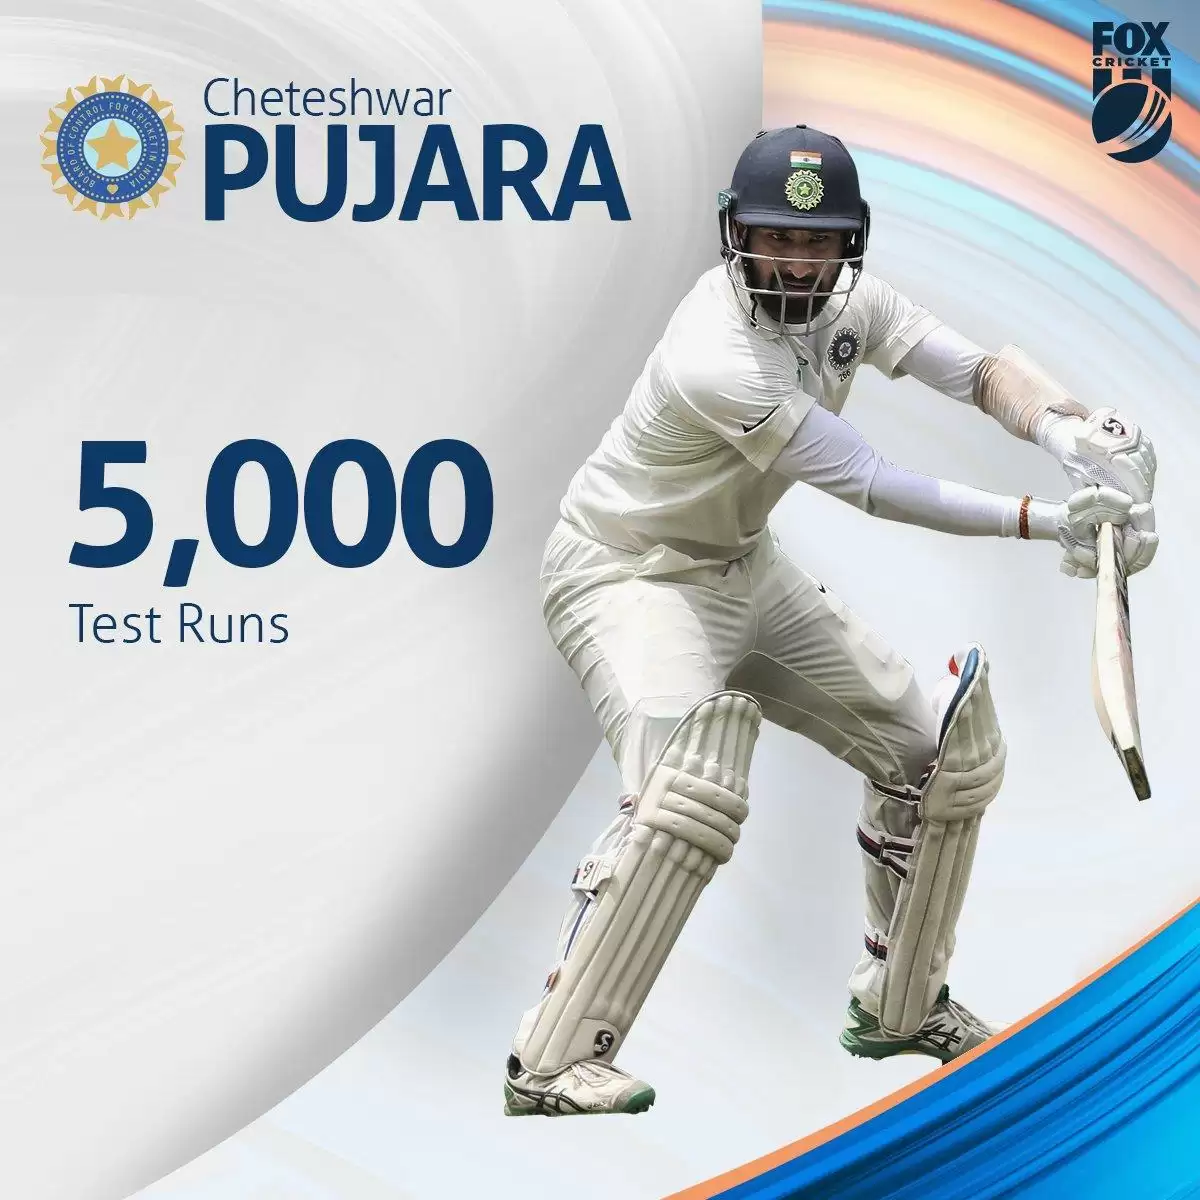 INDvsAUS Cheteshwar Pujara ने जड़ा अपना 16वाँ टेस्ट शतक, 5000 रन किये पुरे